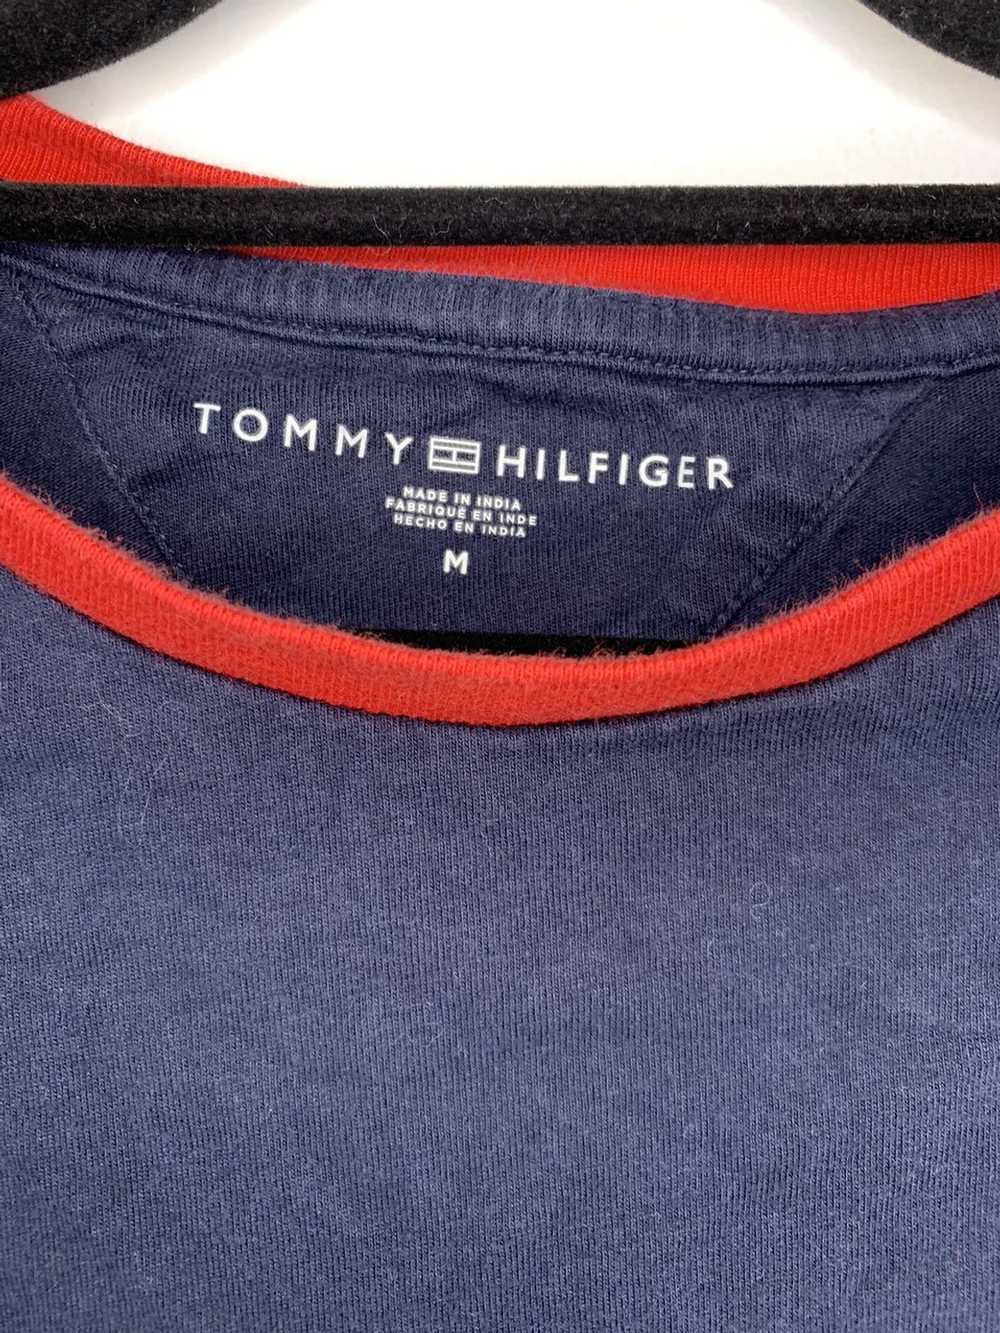 Tommy Hilfiger Tommy Hilfiger Navy Blue & Red Men… - image 4